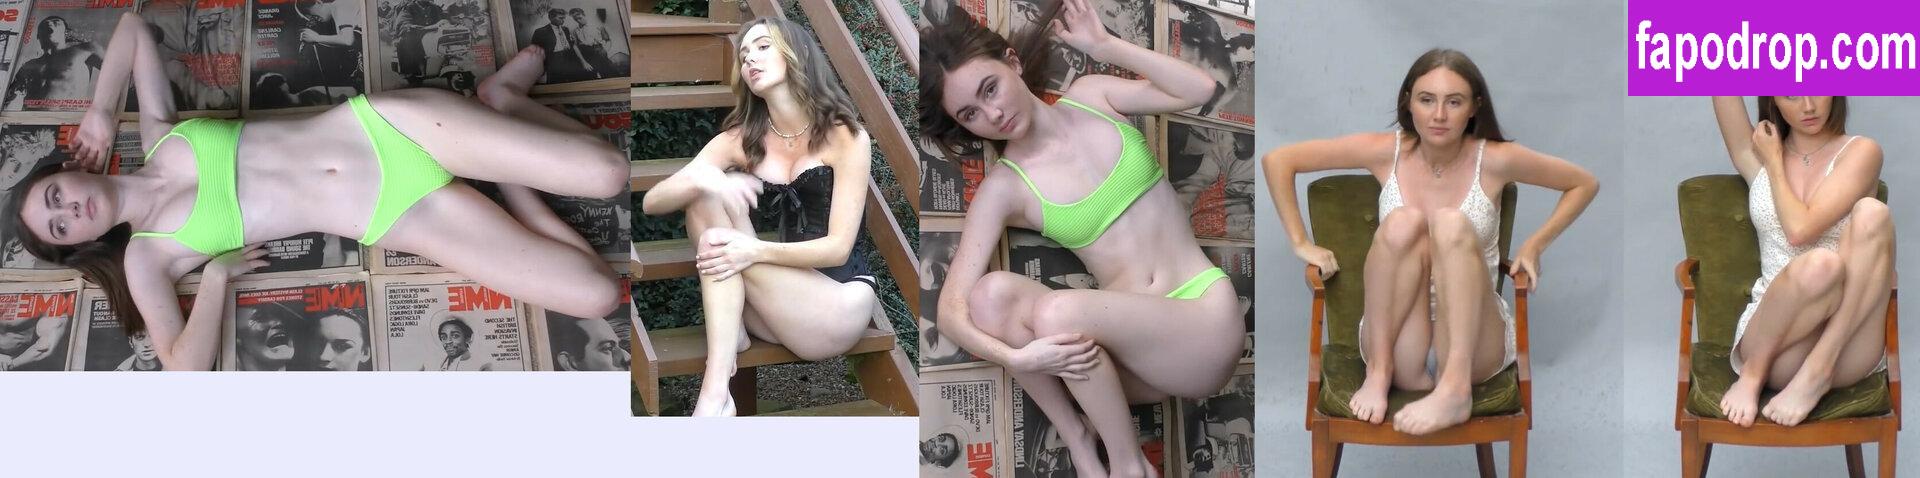 Weekly Imogen / Emma / imogenwho / weeklyimogen leak of nude photo #0005 from OnlyFans or Patreon